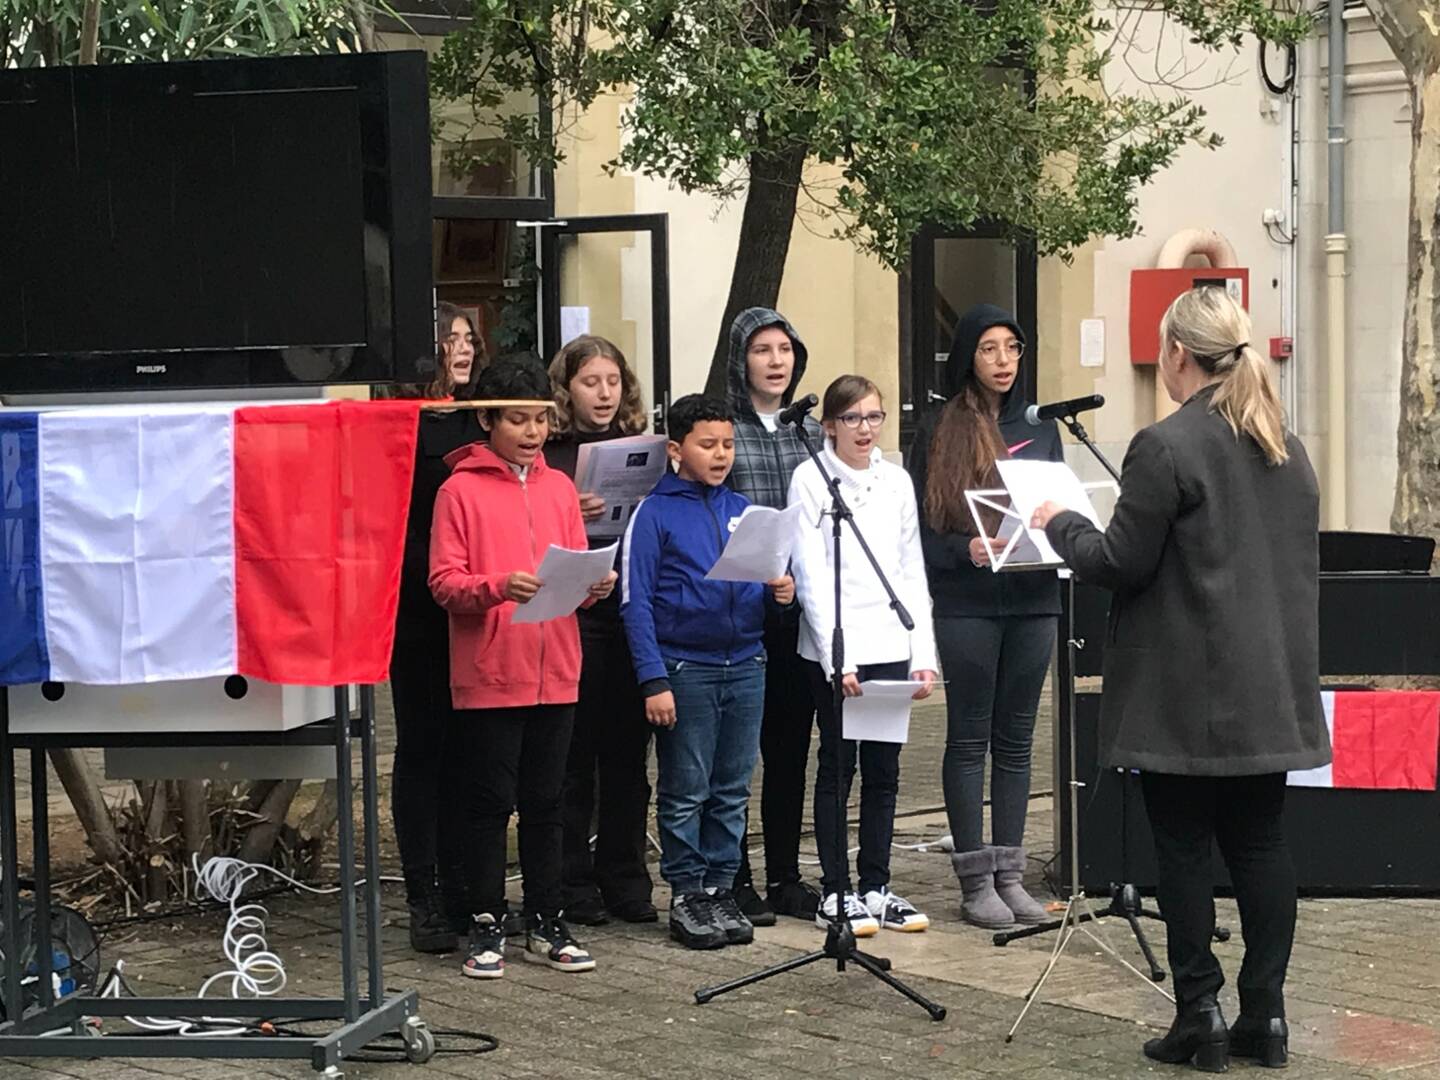 La chorale du collège a notamment interprété Liberté, égalité, fraternité, chanson écrite après les attentats de 2015 "pour ne jamais oublier".